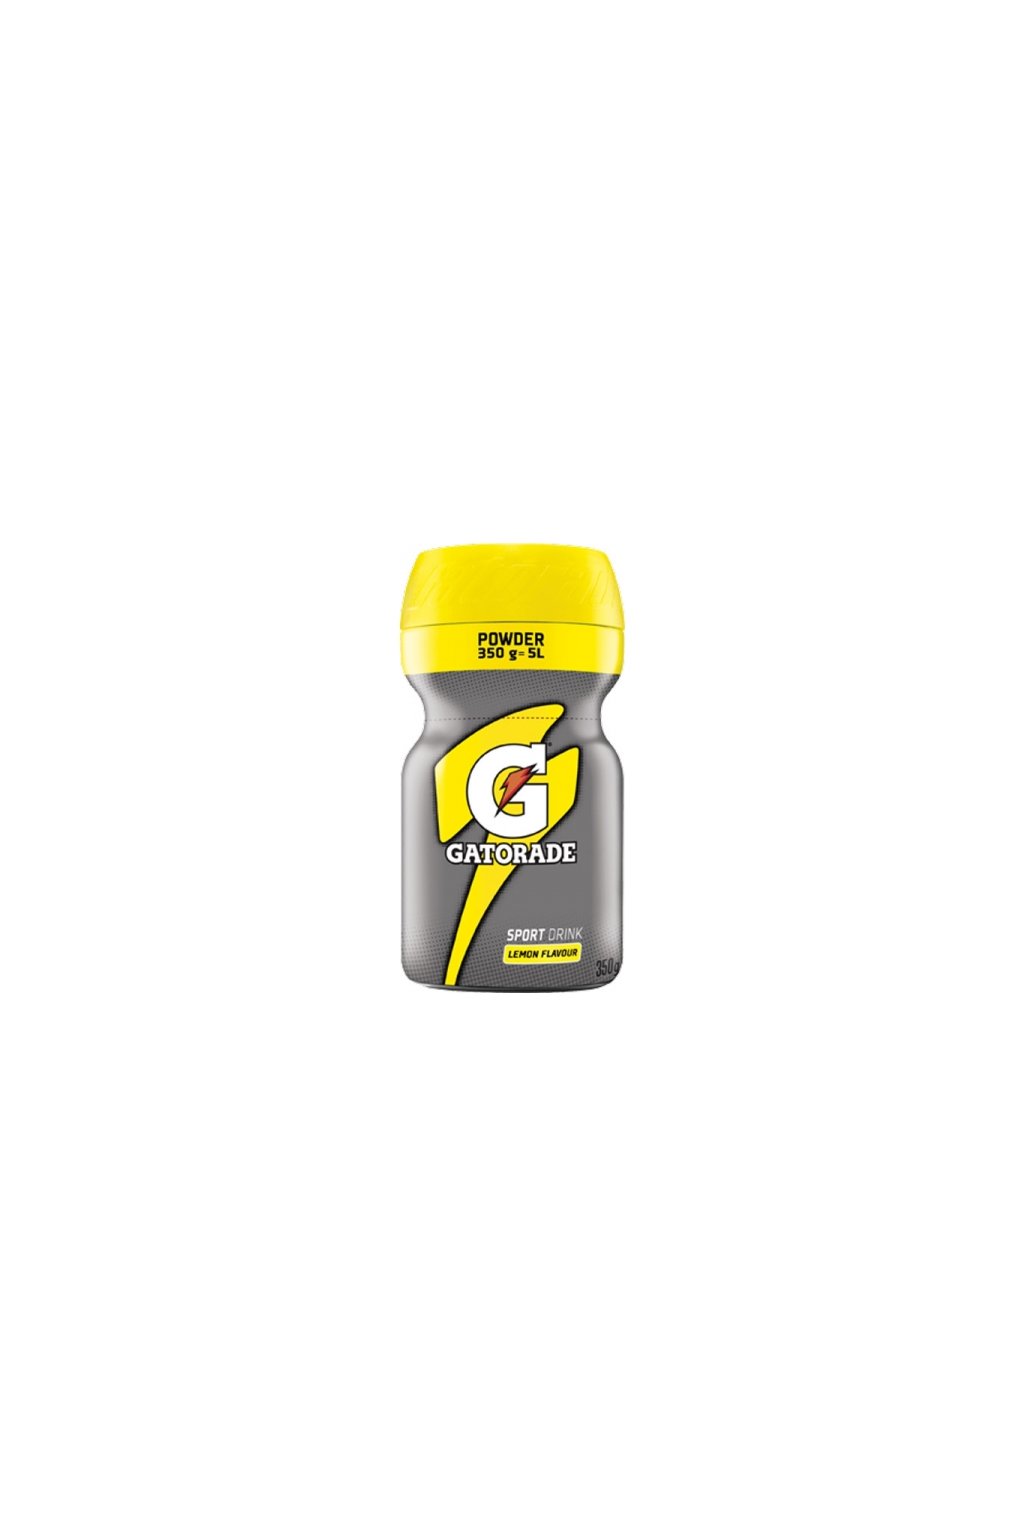 gatorade 760419000 powder 350g lemon 0